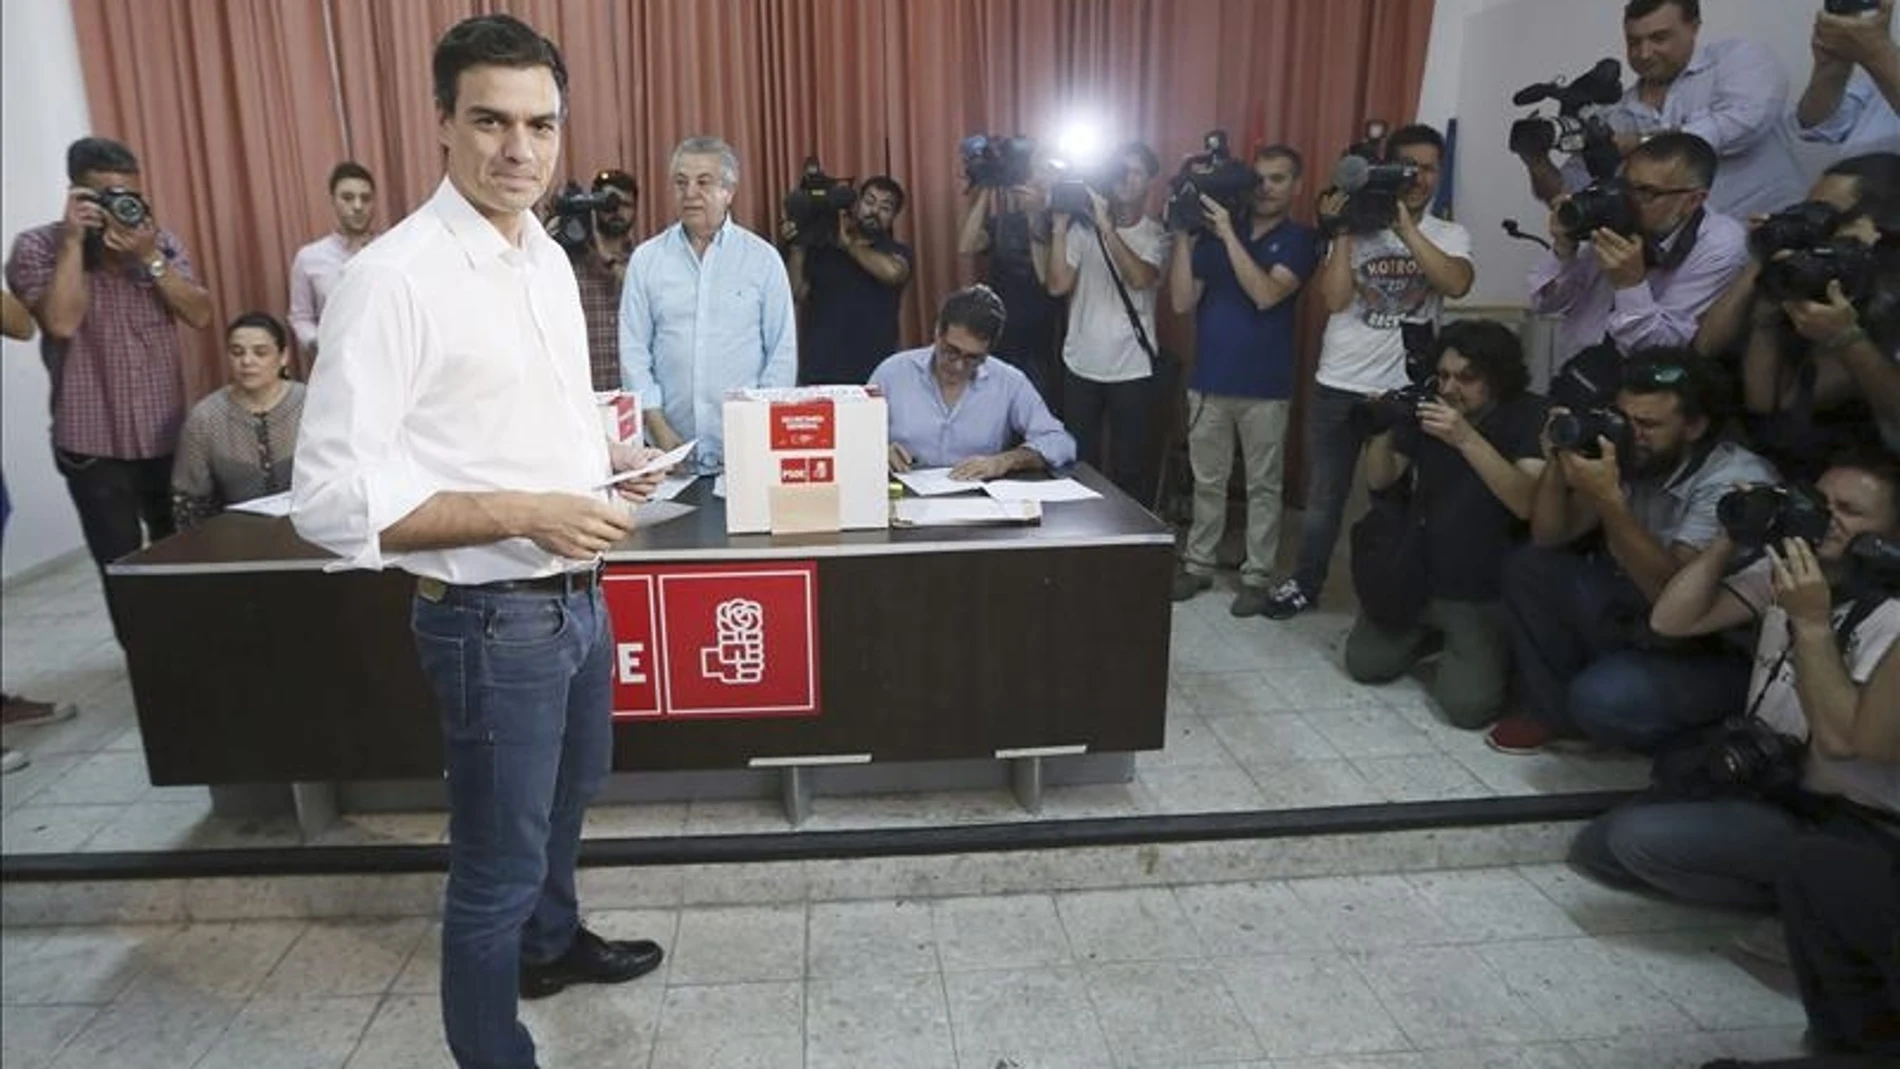 El candidato a la Secretaría General del PSOE Pedro Sánchez ha votado en Tetuán.